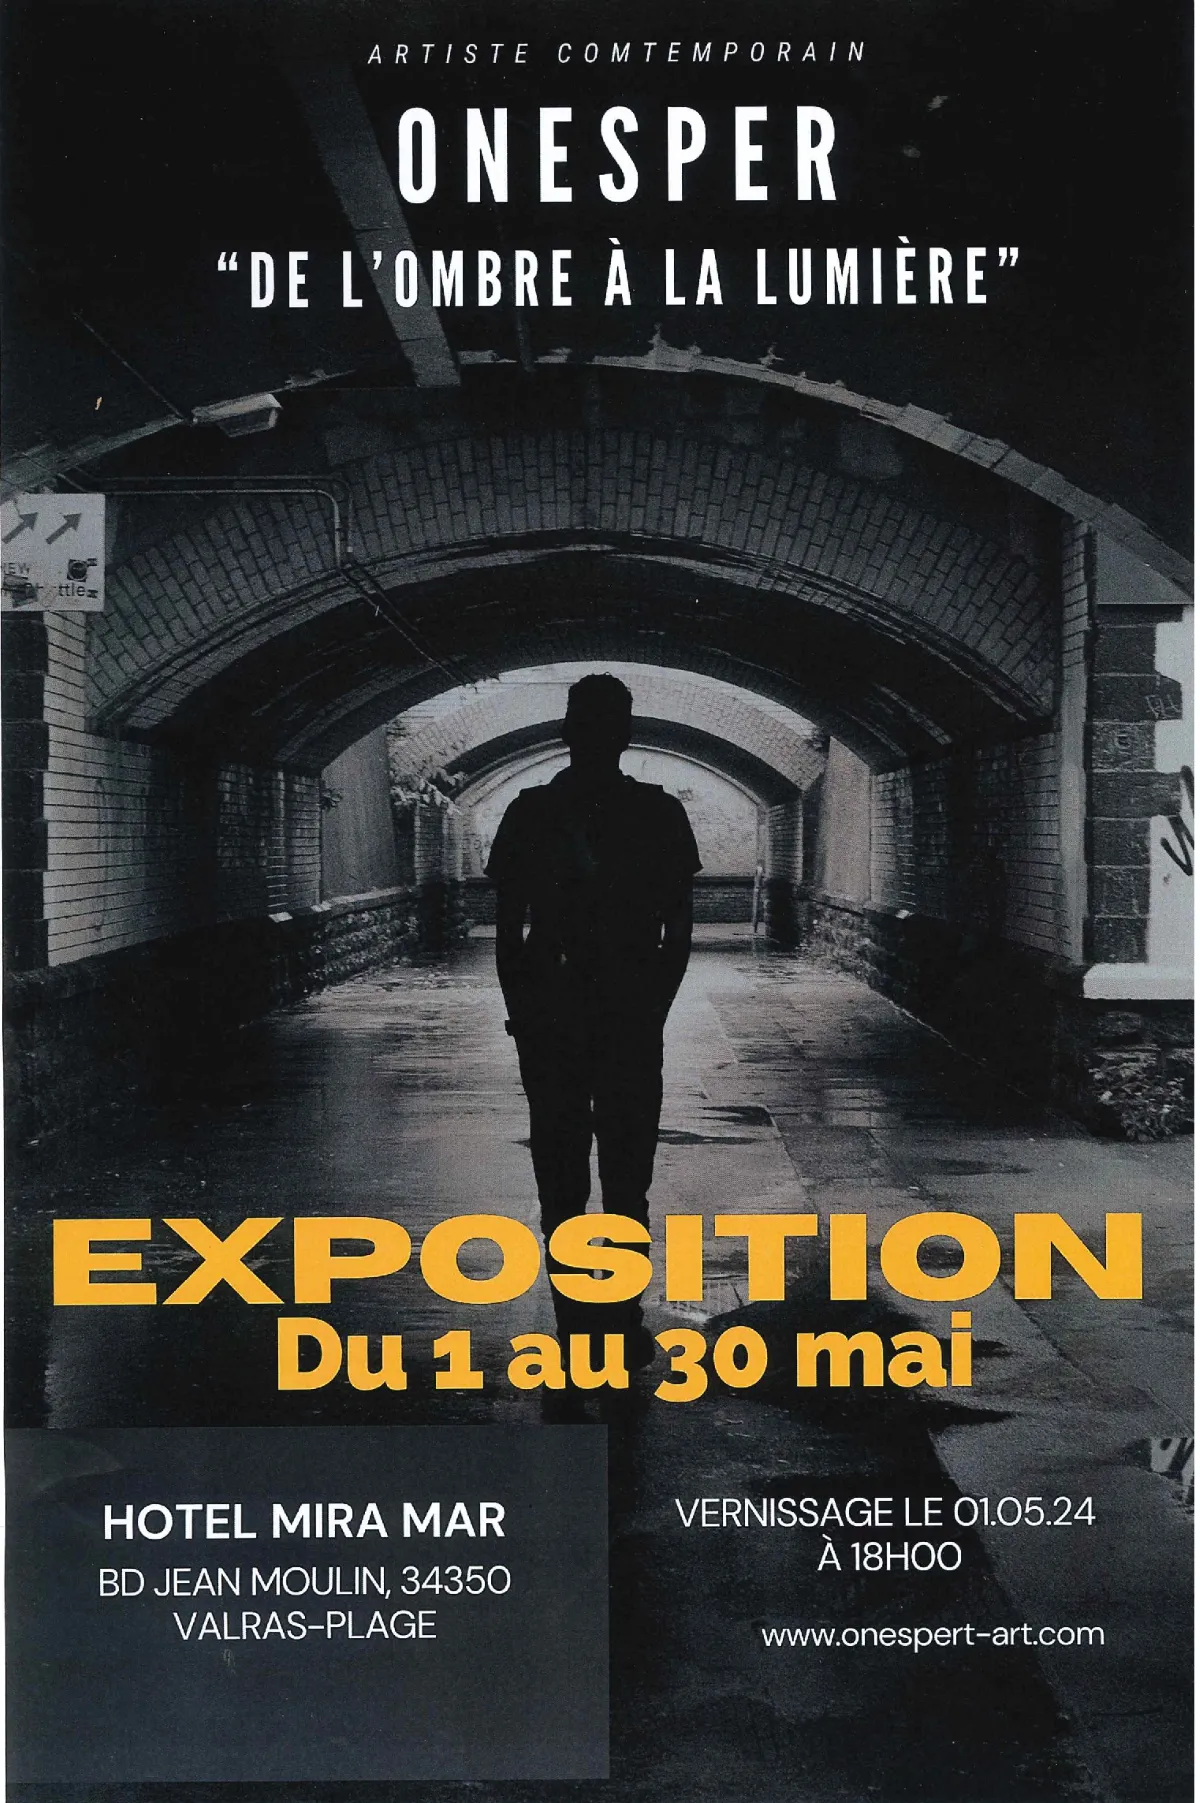 Image qui illustre: Exposition Hôtel Mira-mar- Onesper " De L'ombre À La Lumière" à Valras-Plage - 0